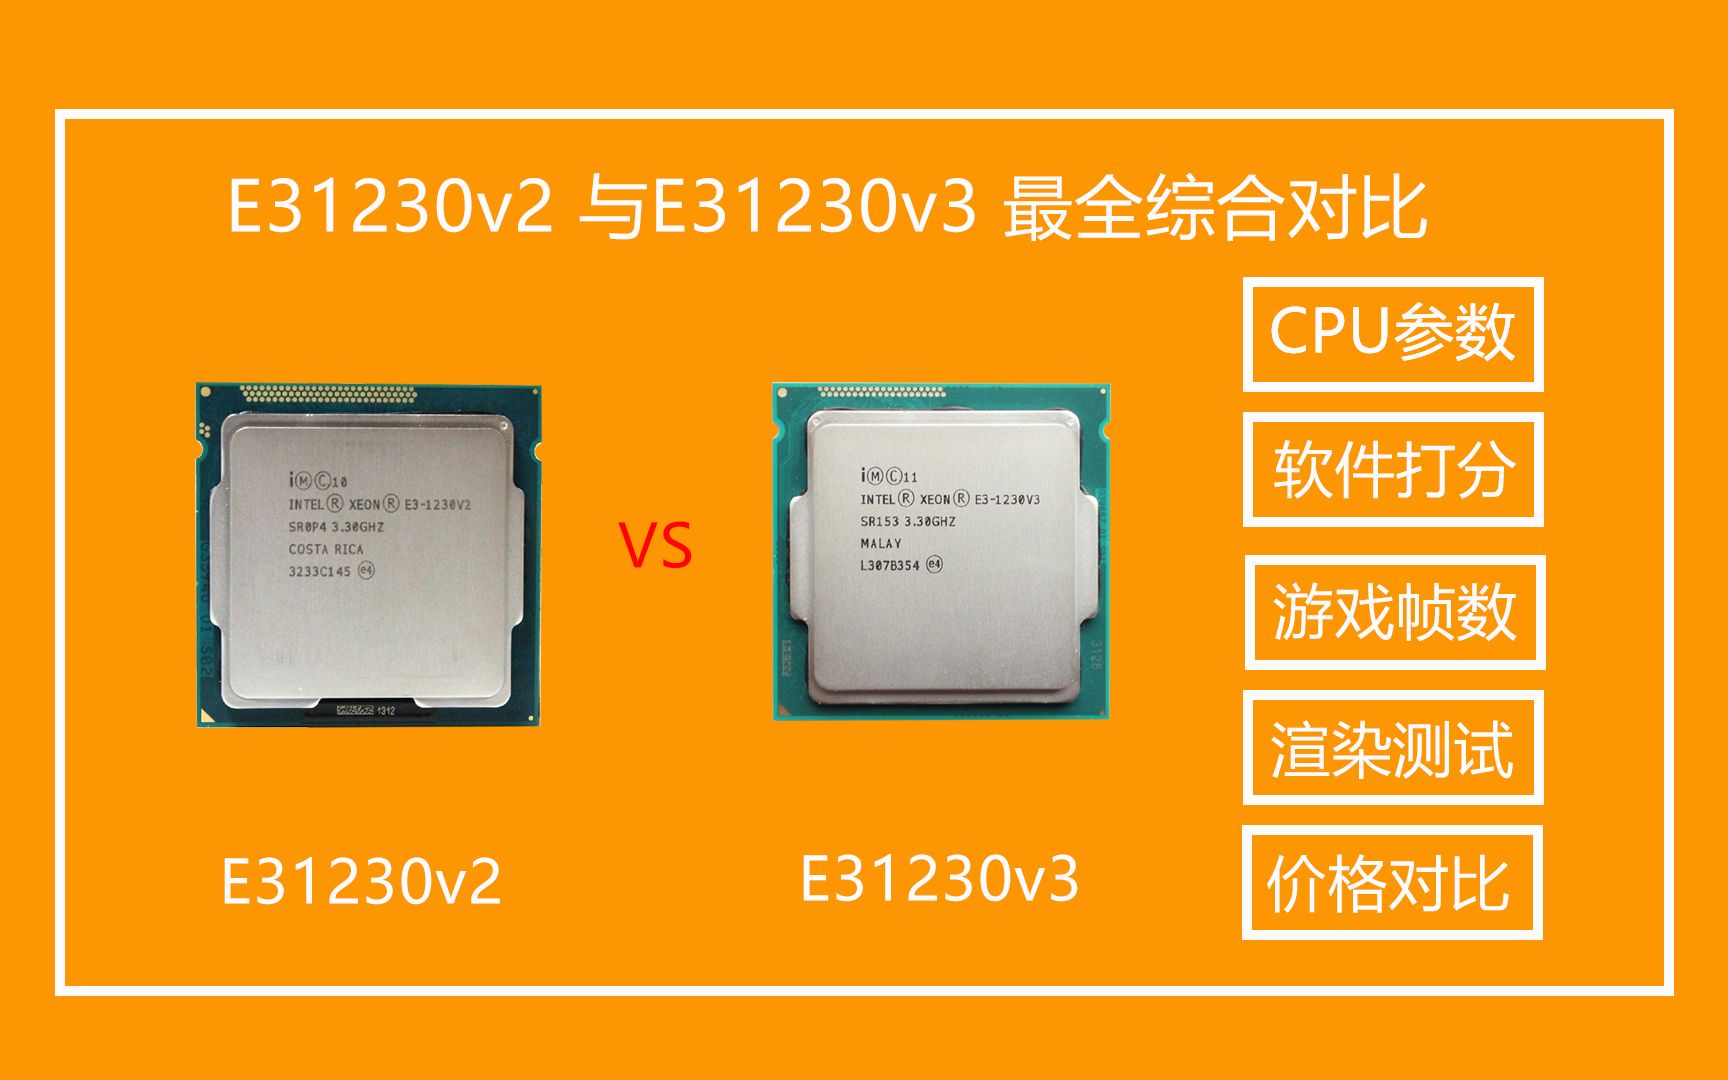 酷睿i5-7400处理器性能卓越，能耗低功耗，应用广泛  第1张